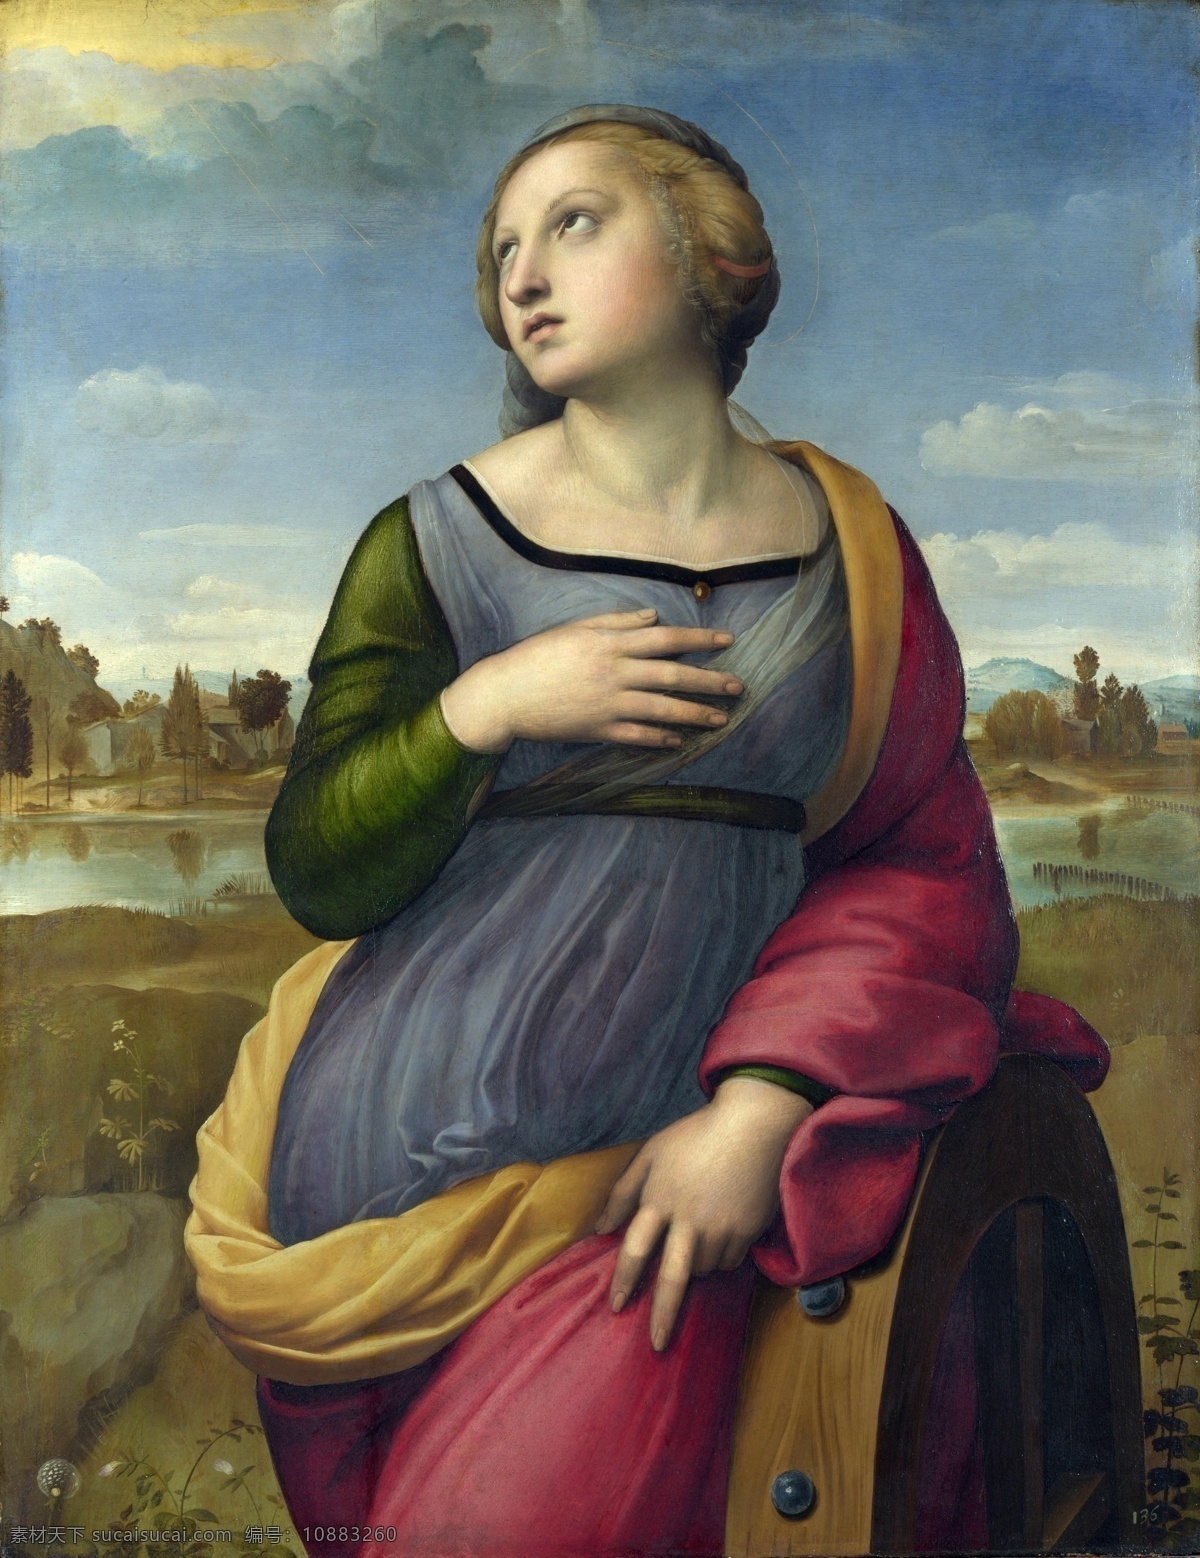 拉斐尔作品 文艺复兴时期 意大利画家 国家艺术馆 拉斐尔 宗教艺术 圣母 绘画书法 文化艺术 耶稣 古典油画 人物 绘画 油画 肖像 拉斐尔油画